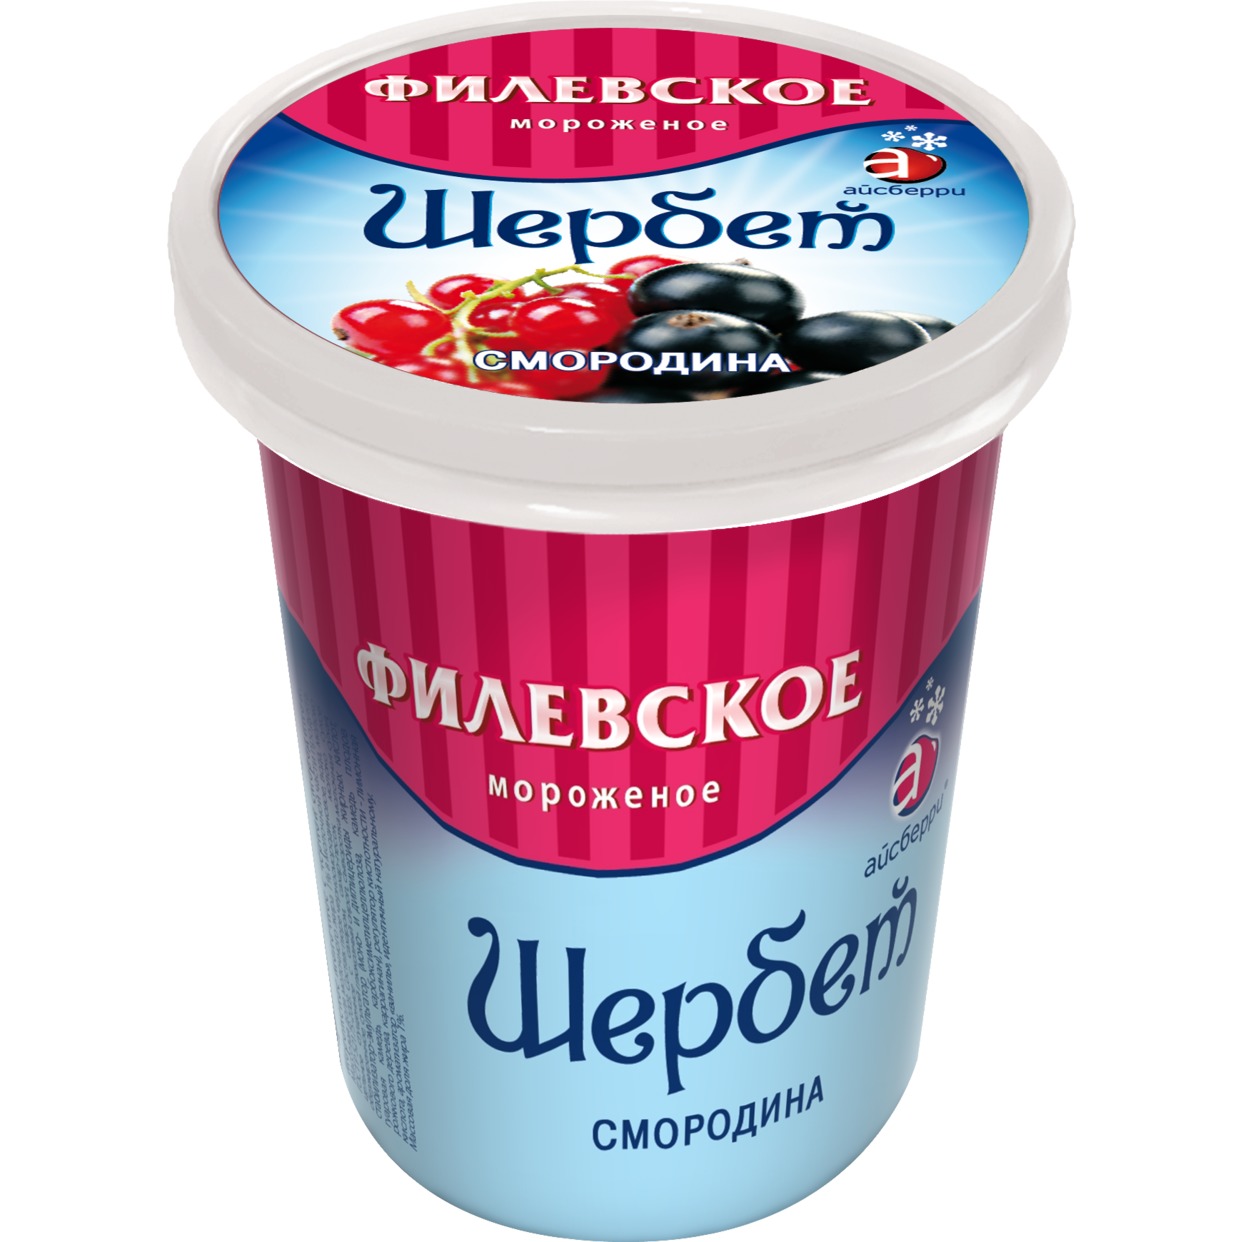 Мороженое Филевское Щербет плодово-ягодный 80г по акции в Пятерочке